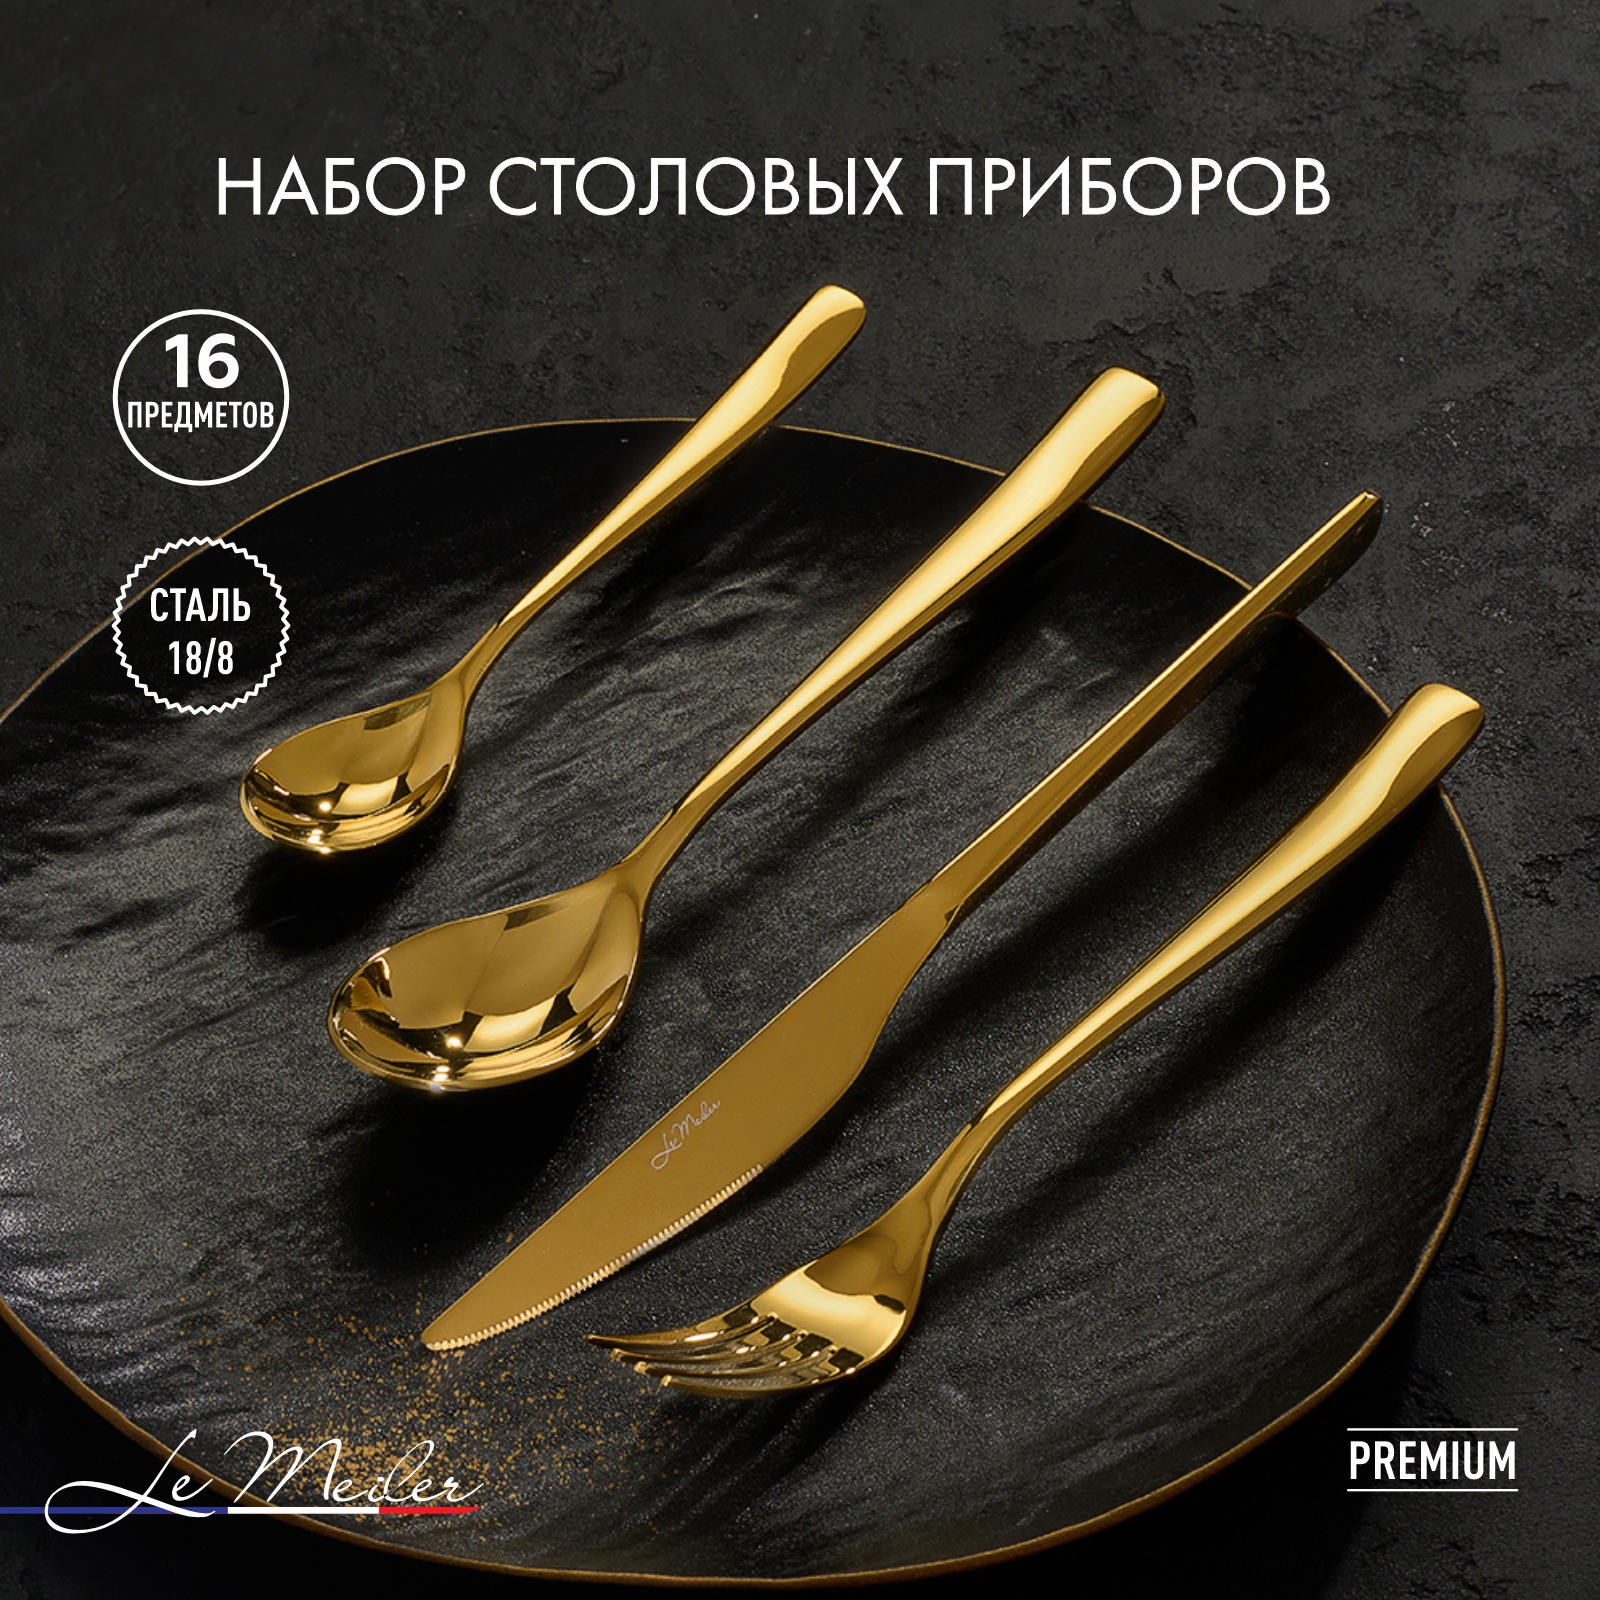 Набор столовых приборов Le Meiler 16 предметов ложки столовые чайные вилки ножи FS-112